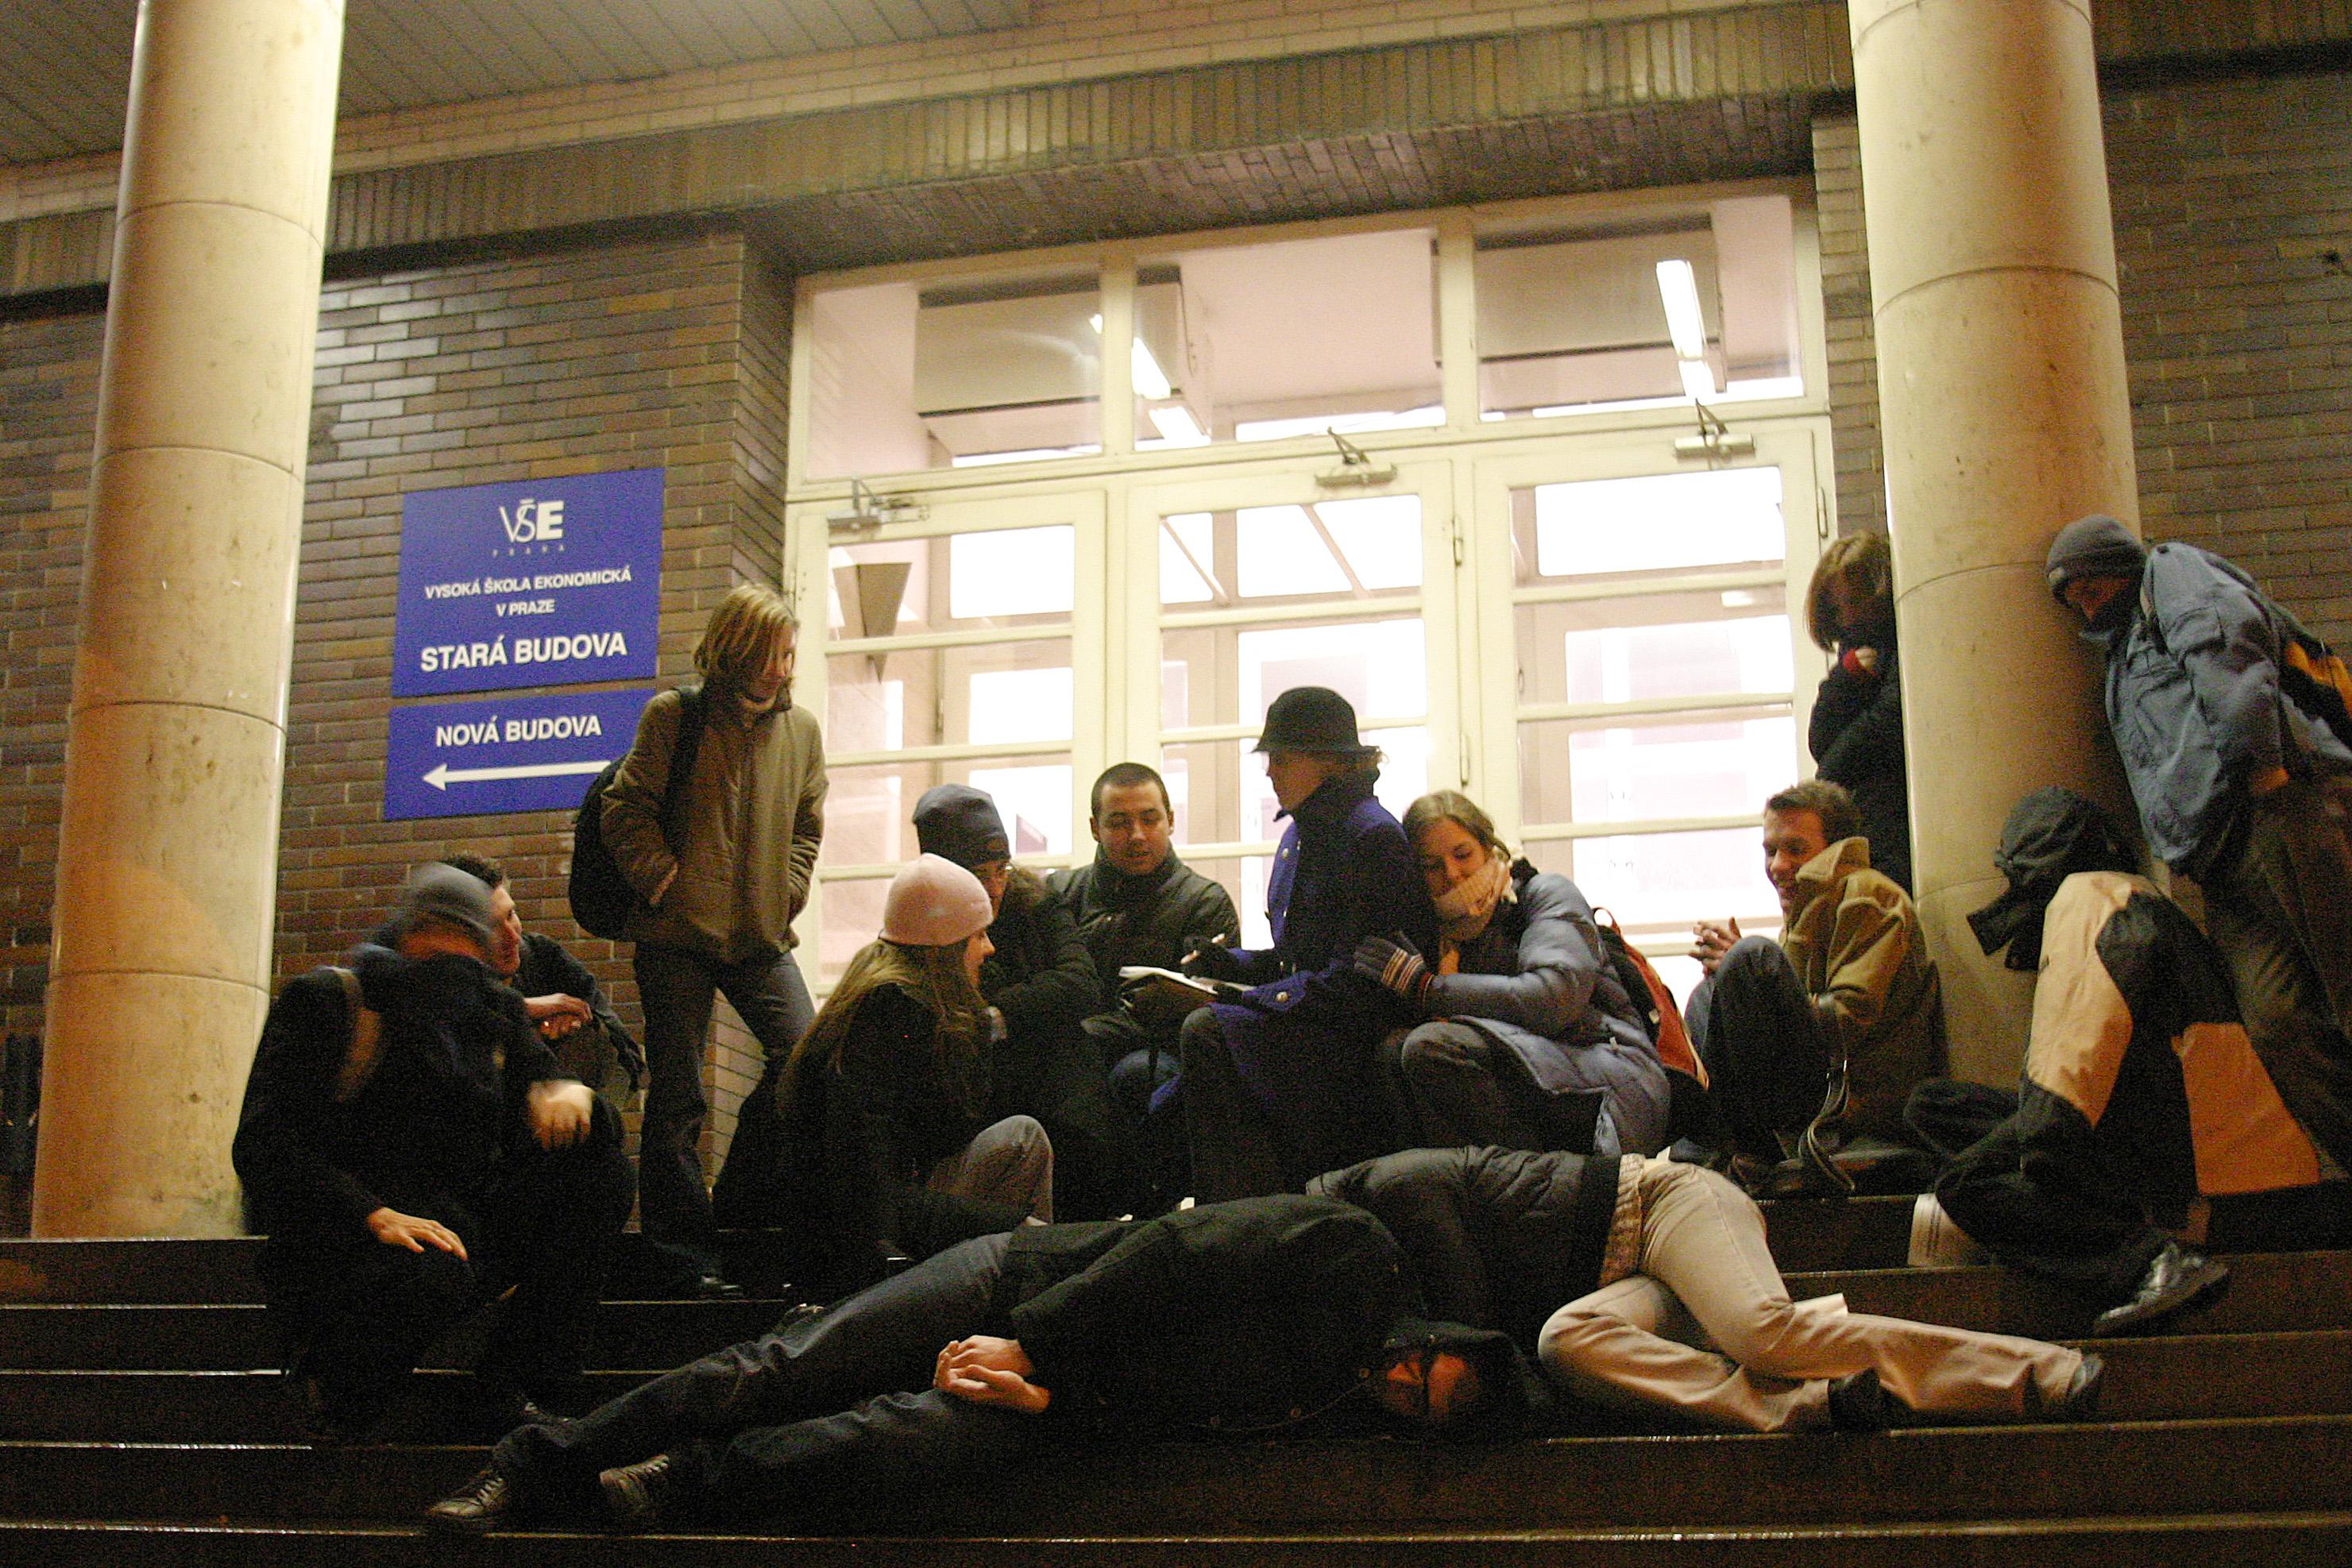 Studenti bivakující před školou
ilustrační foto: Studenti čekají v noci před školou, aby se zapsali do vedlejší specializace Komerční komunikace